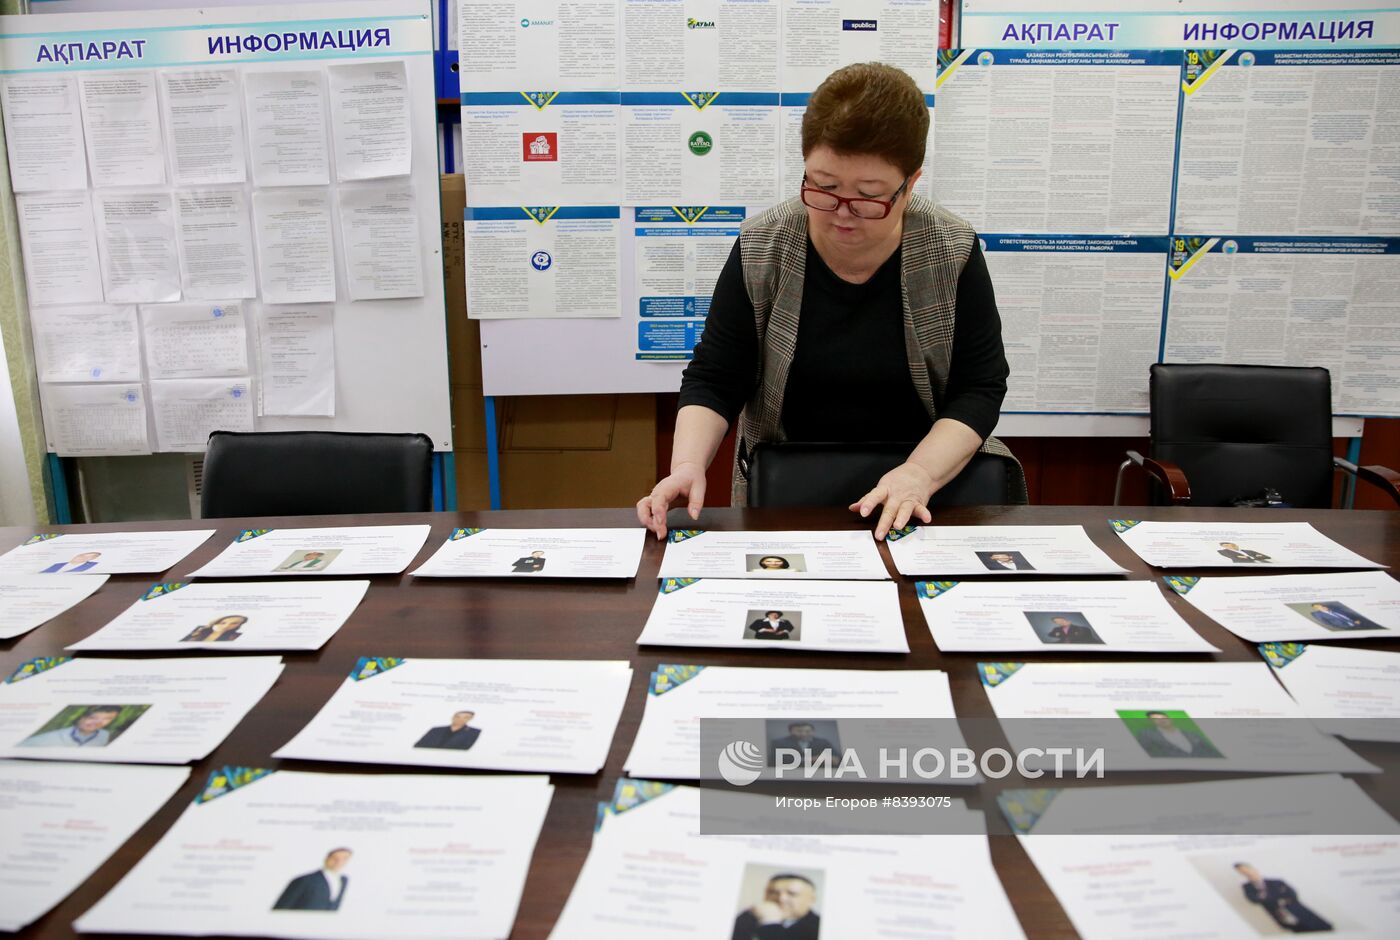 Подготовка избирательных участков к выборам депутатов в Казахстане